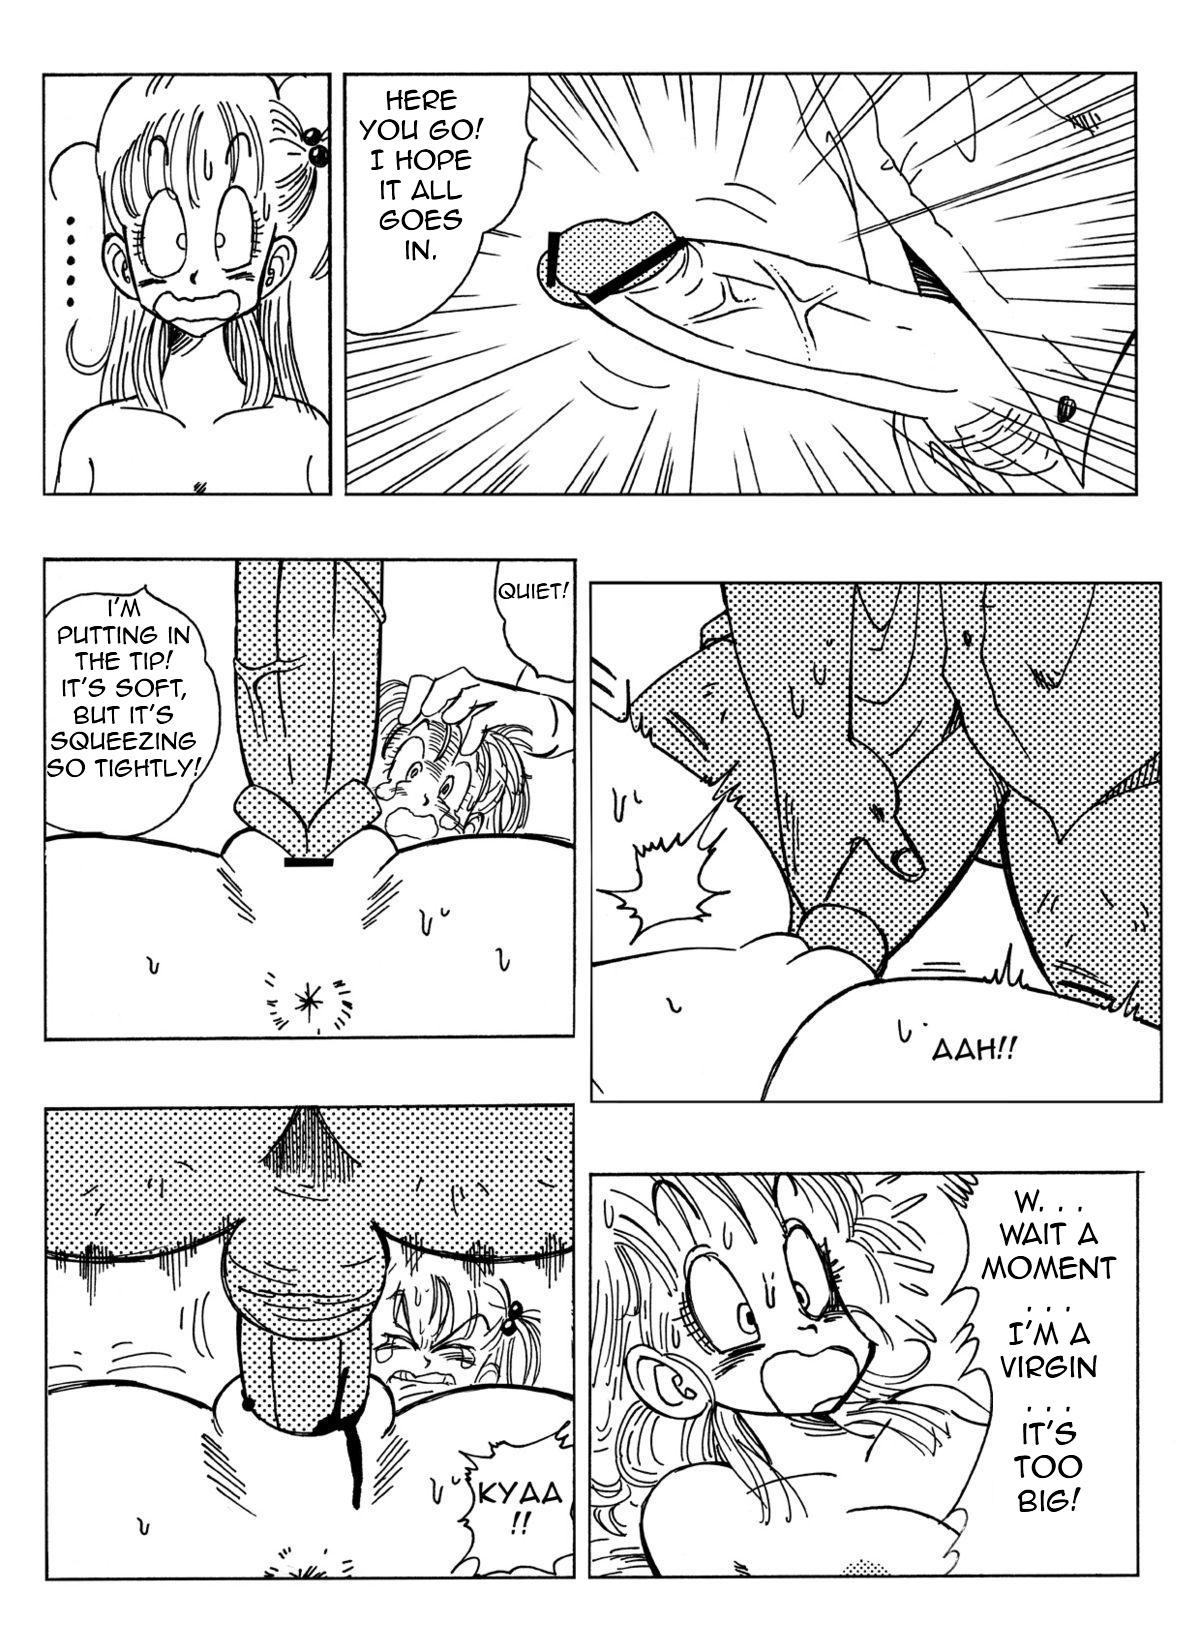 Piercing Bulma and Company - Dragon ball Tanga - Page 8